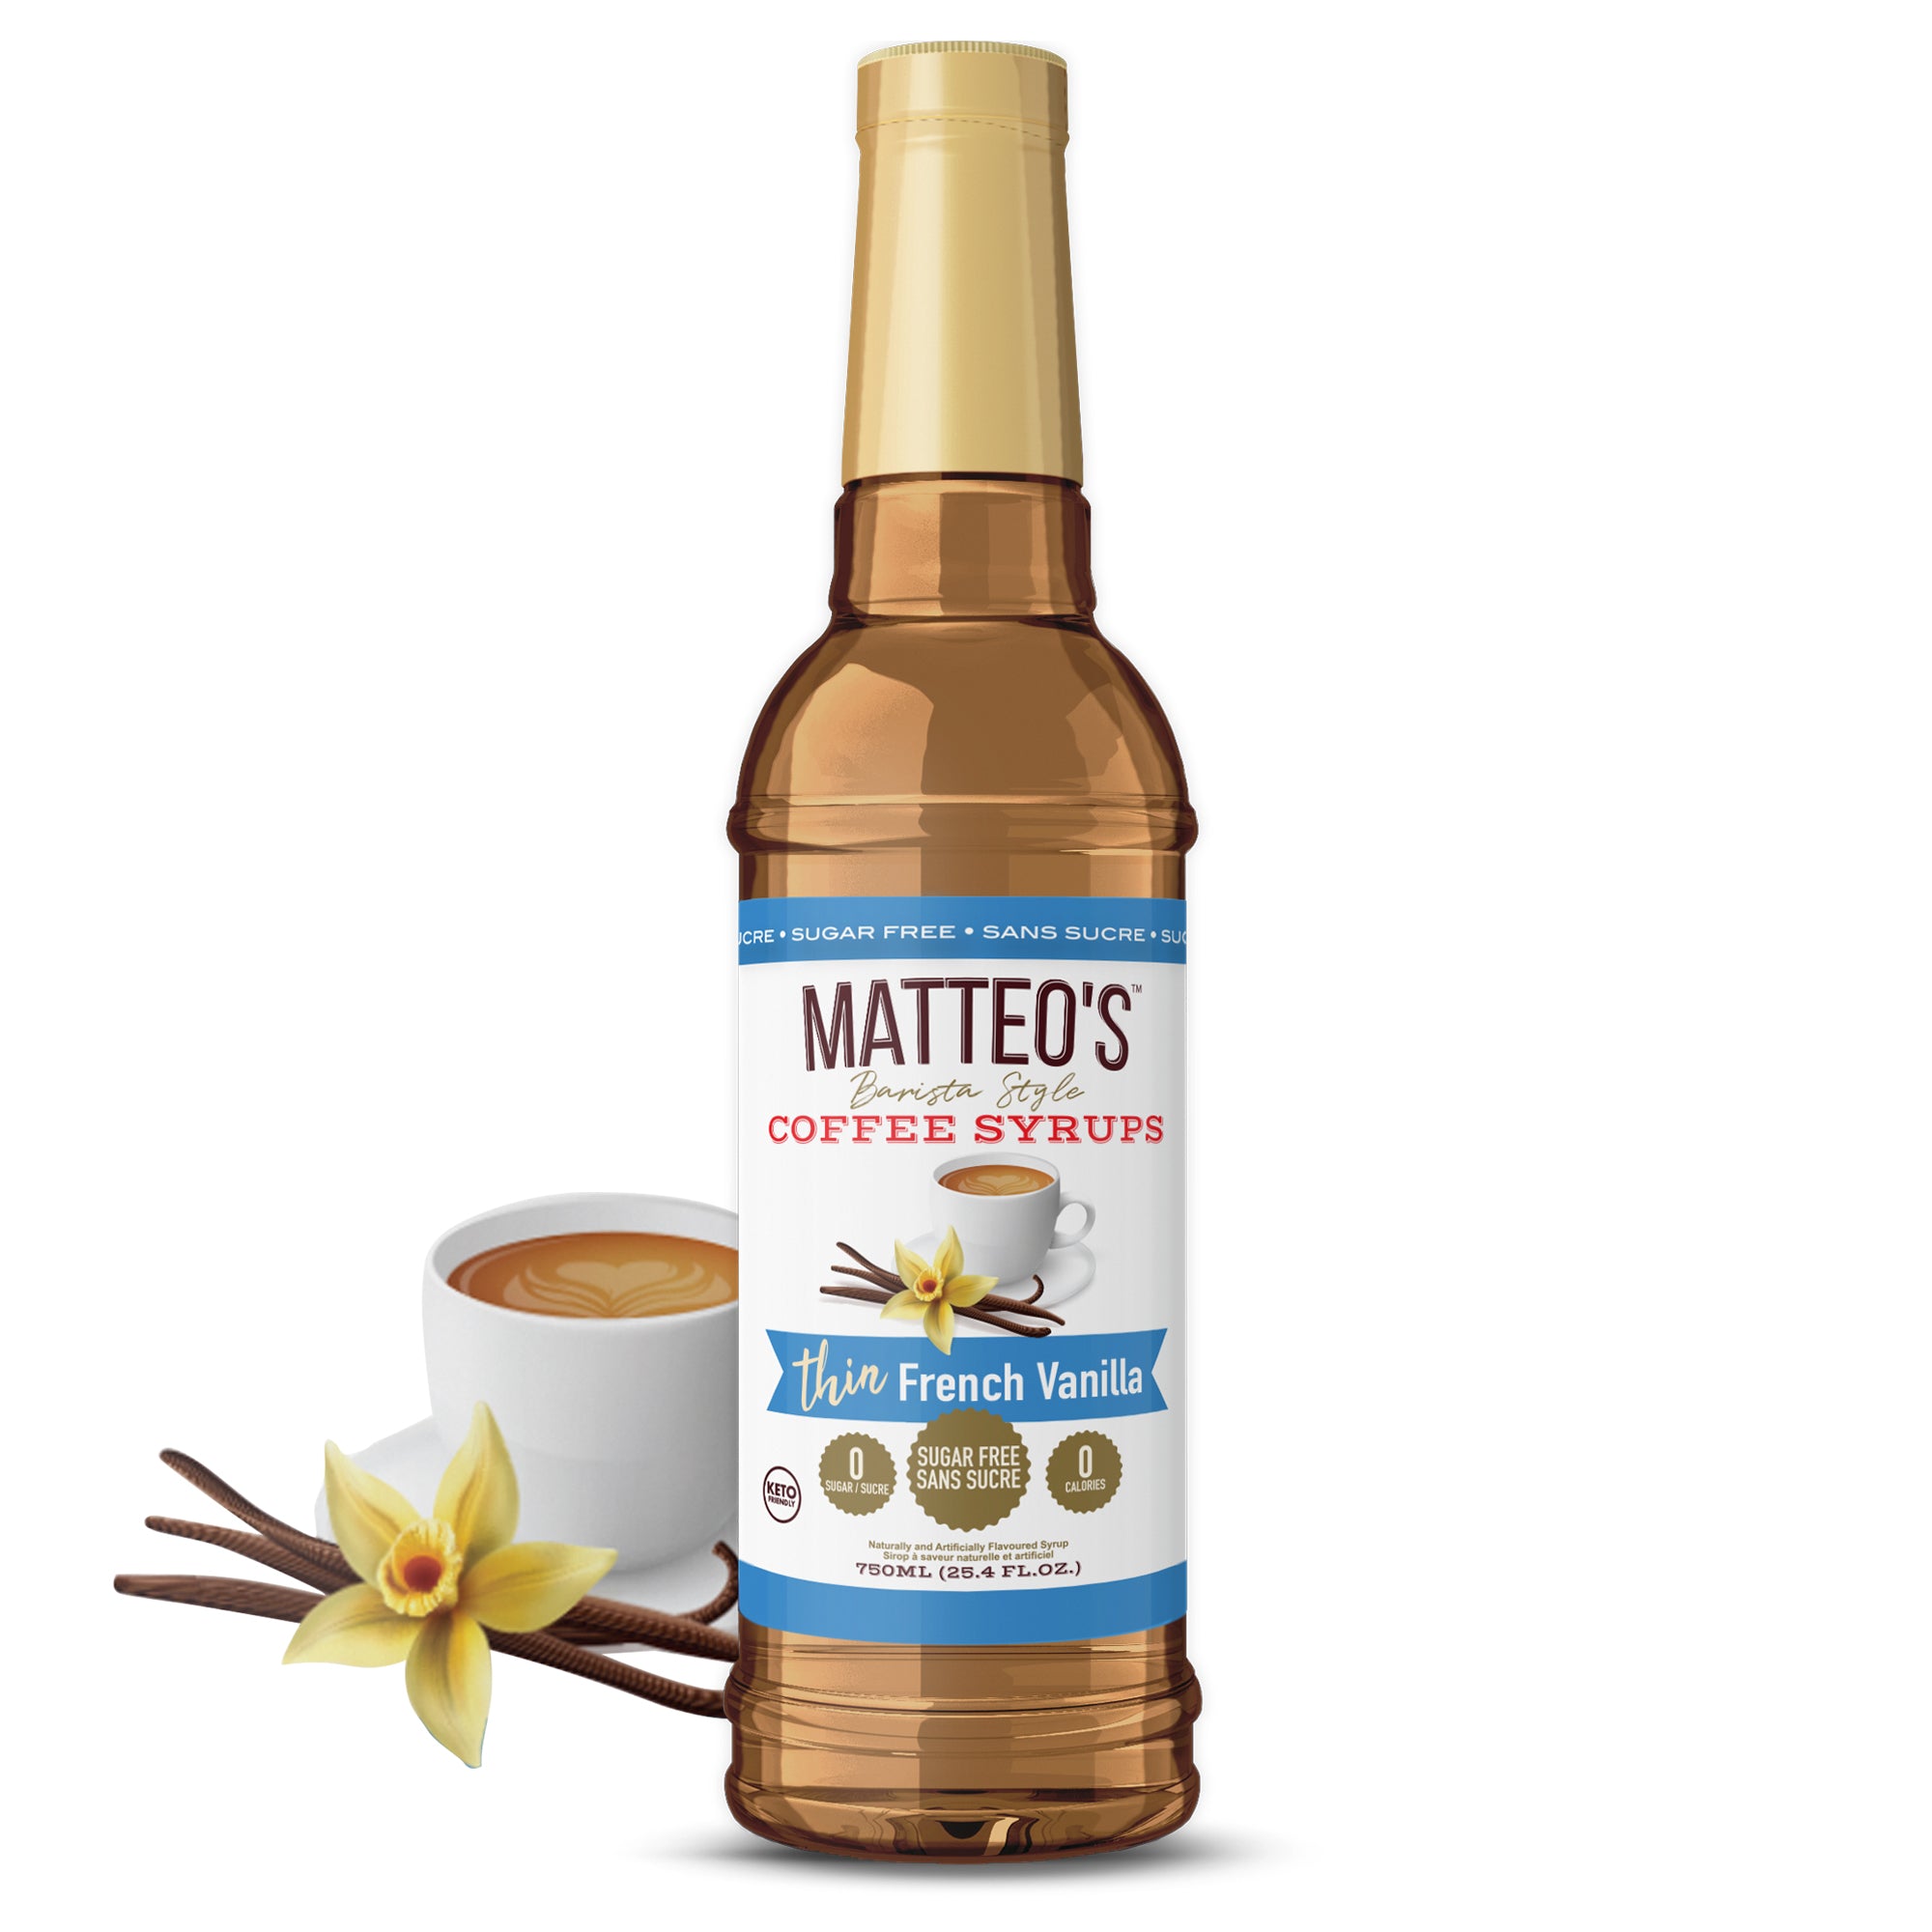 Sirop de café sans sucre de Matteo, cannelle vanille, 0 calories, 0 su -  Matteo's Coffee Syrup